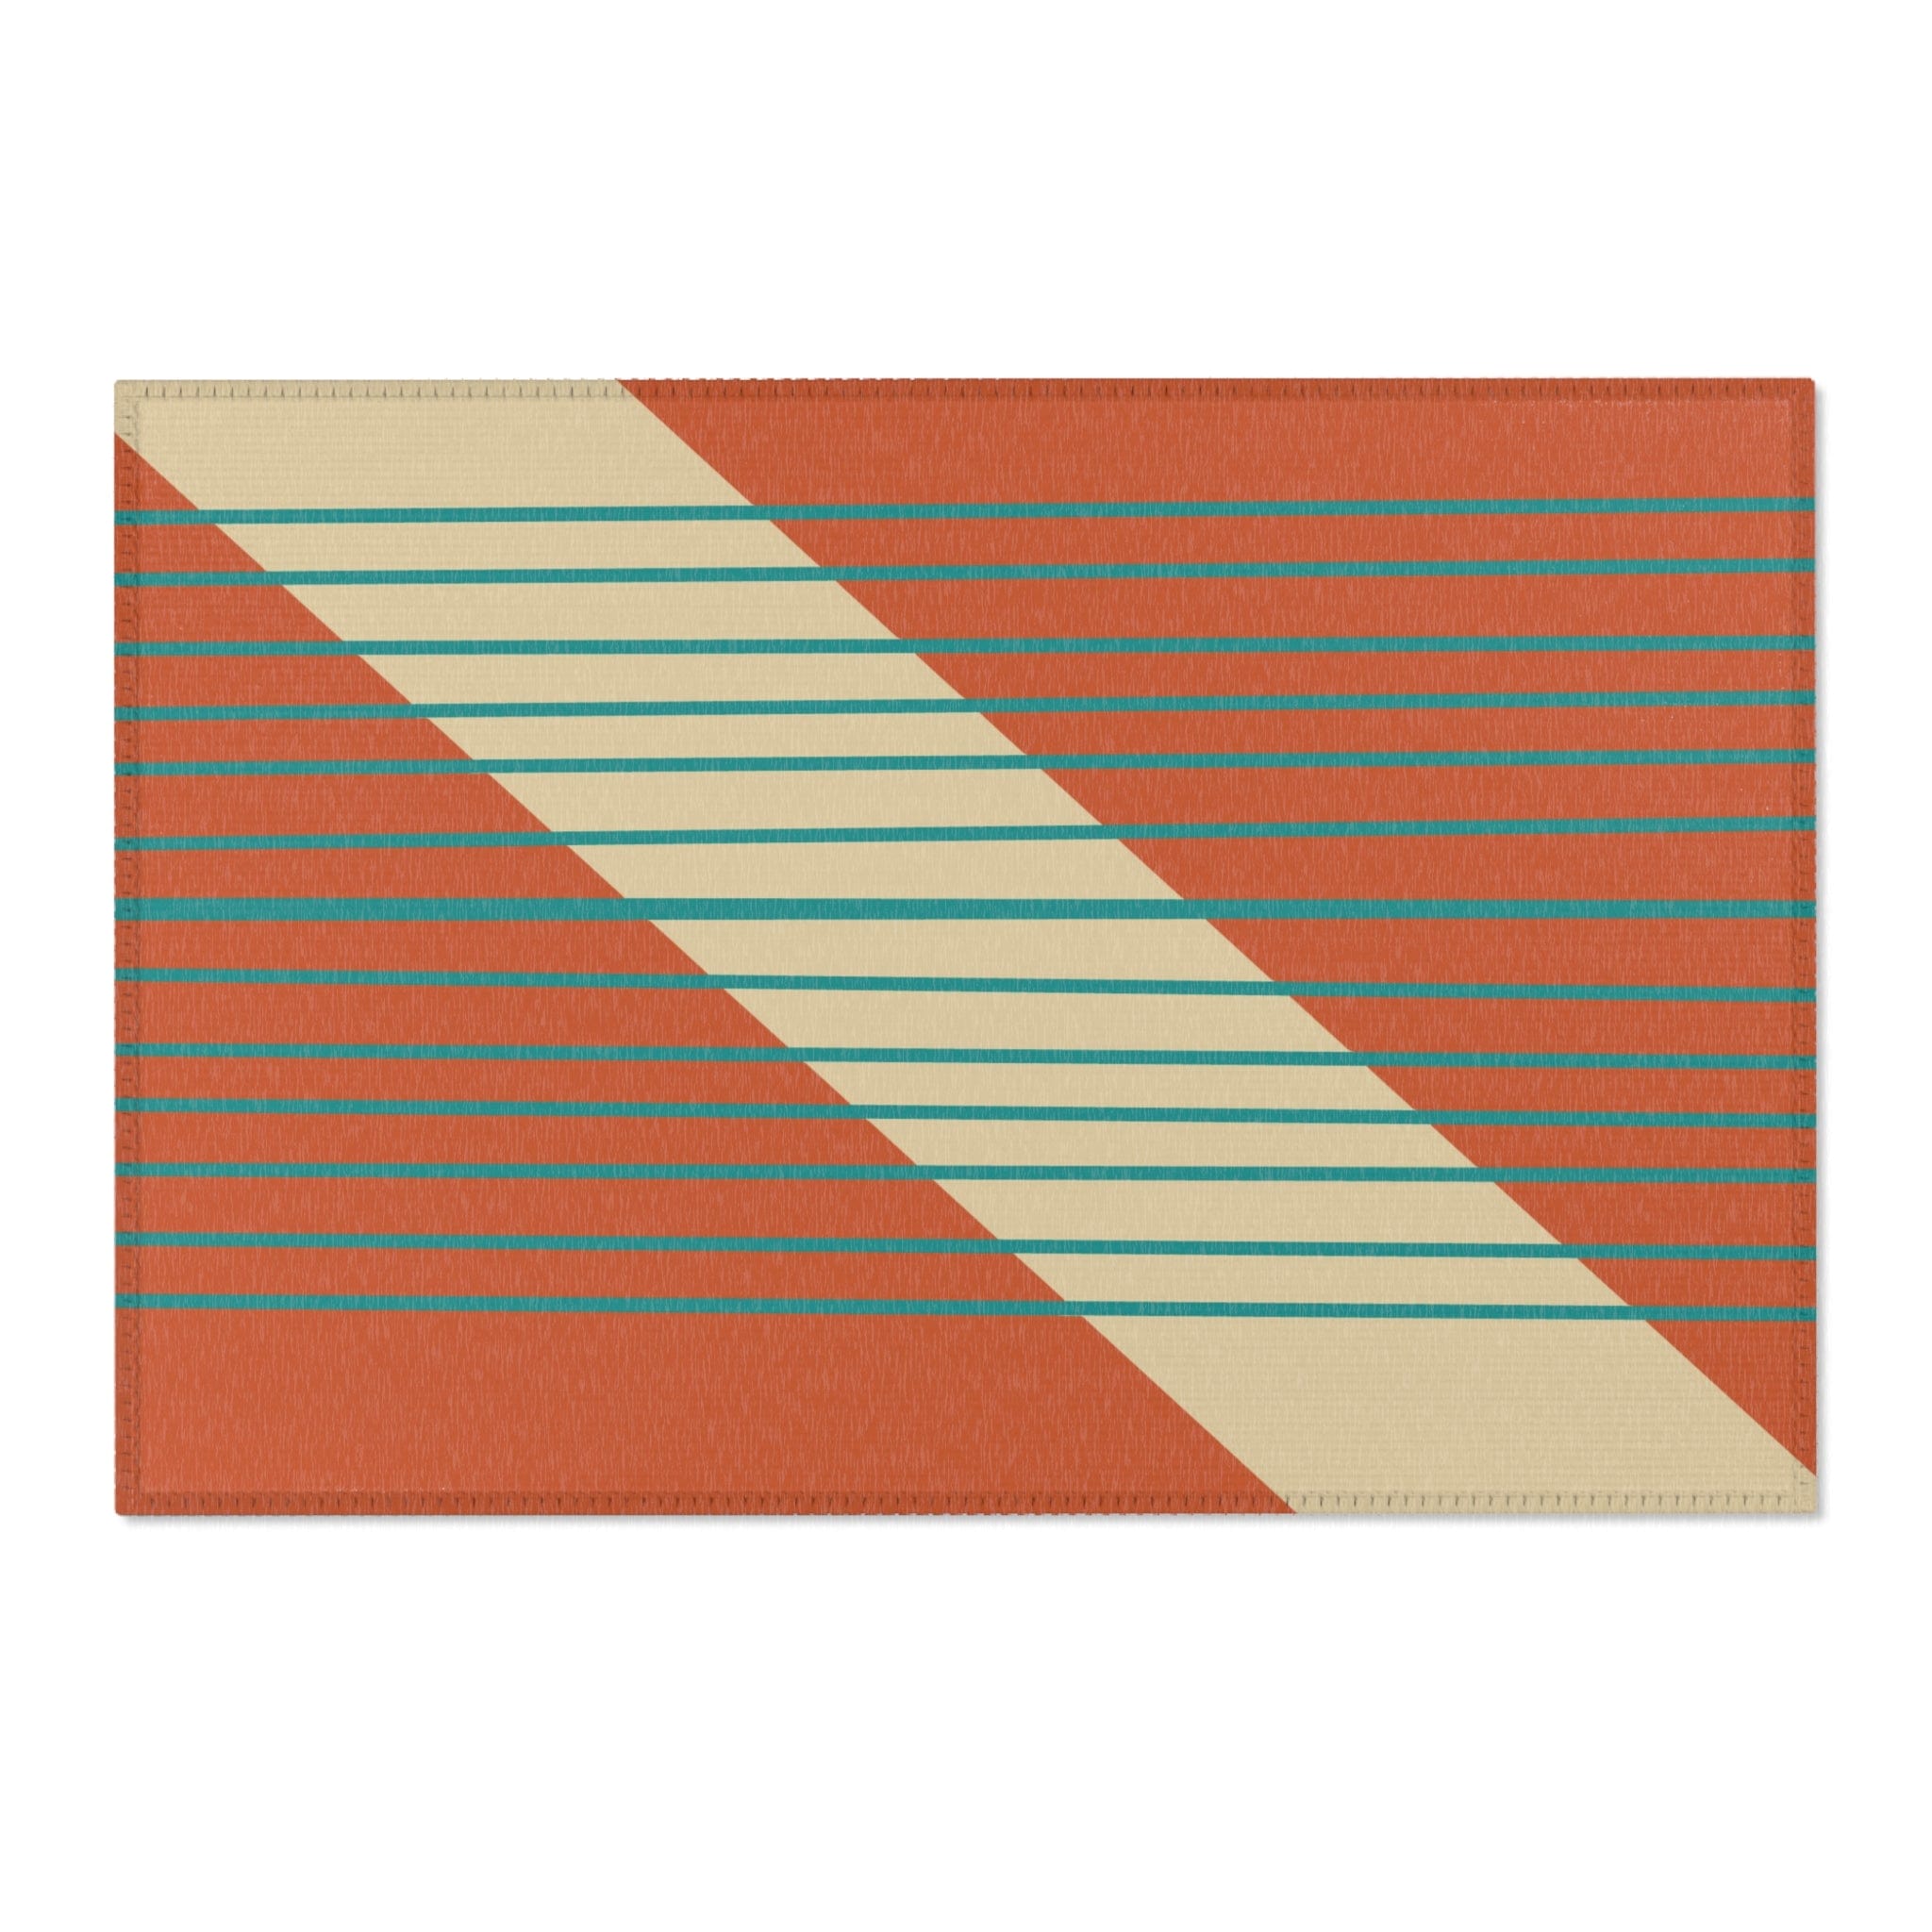 Kate McEnroe New York Mid Century Modern Minimalist Teal Stripe Area RugRugs18877690791941990545